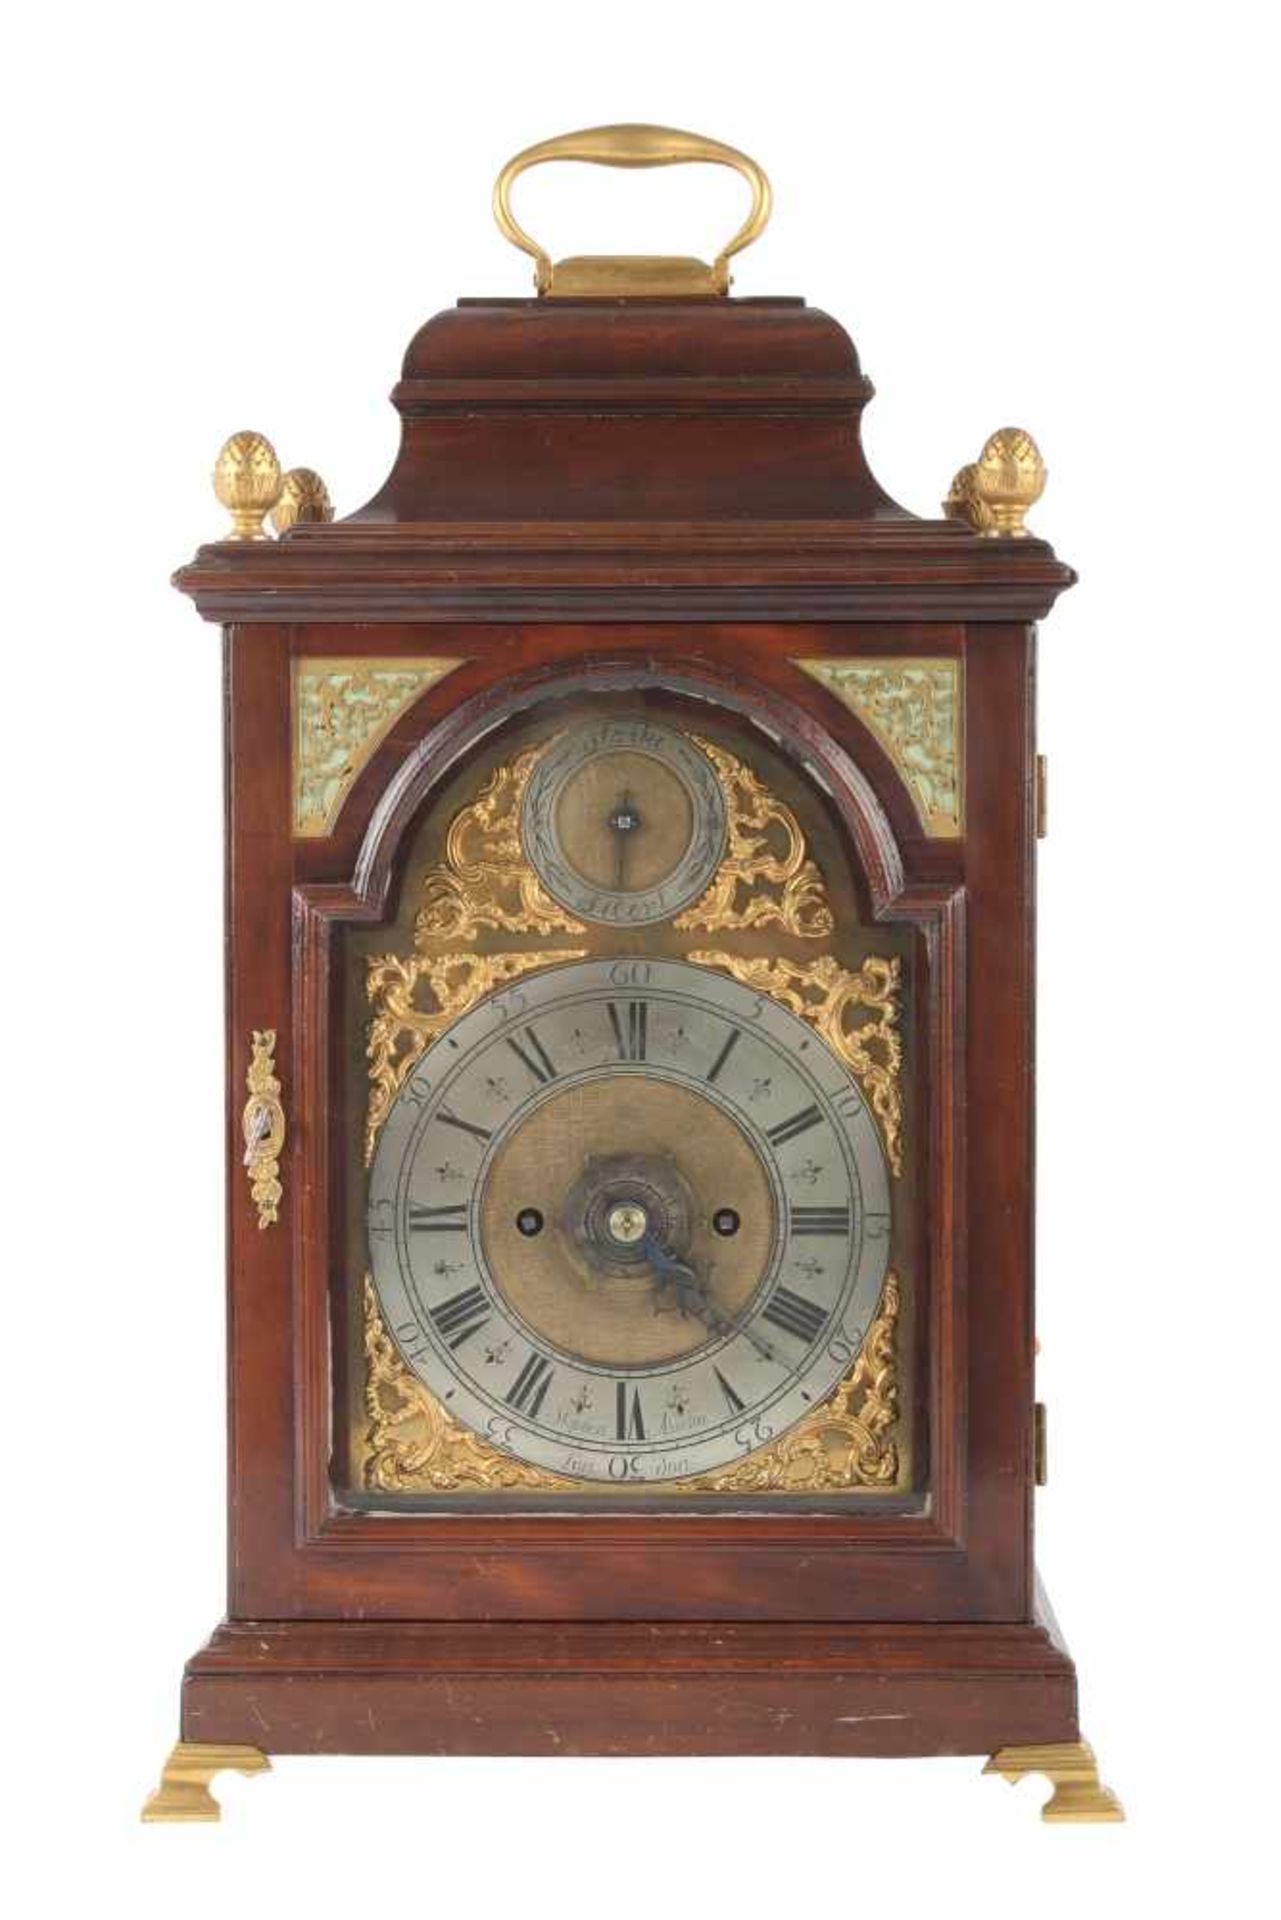 Stockuhr, London, bracket clock,Holzgehäuse m. Messingaplikken, verziertes Zifferblatt, bezeichnet